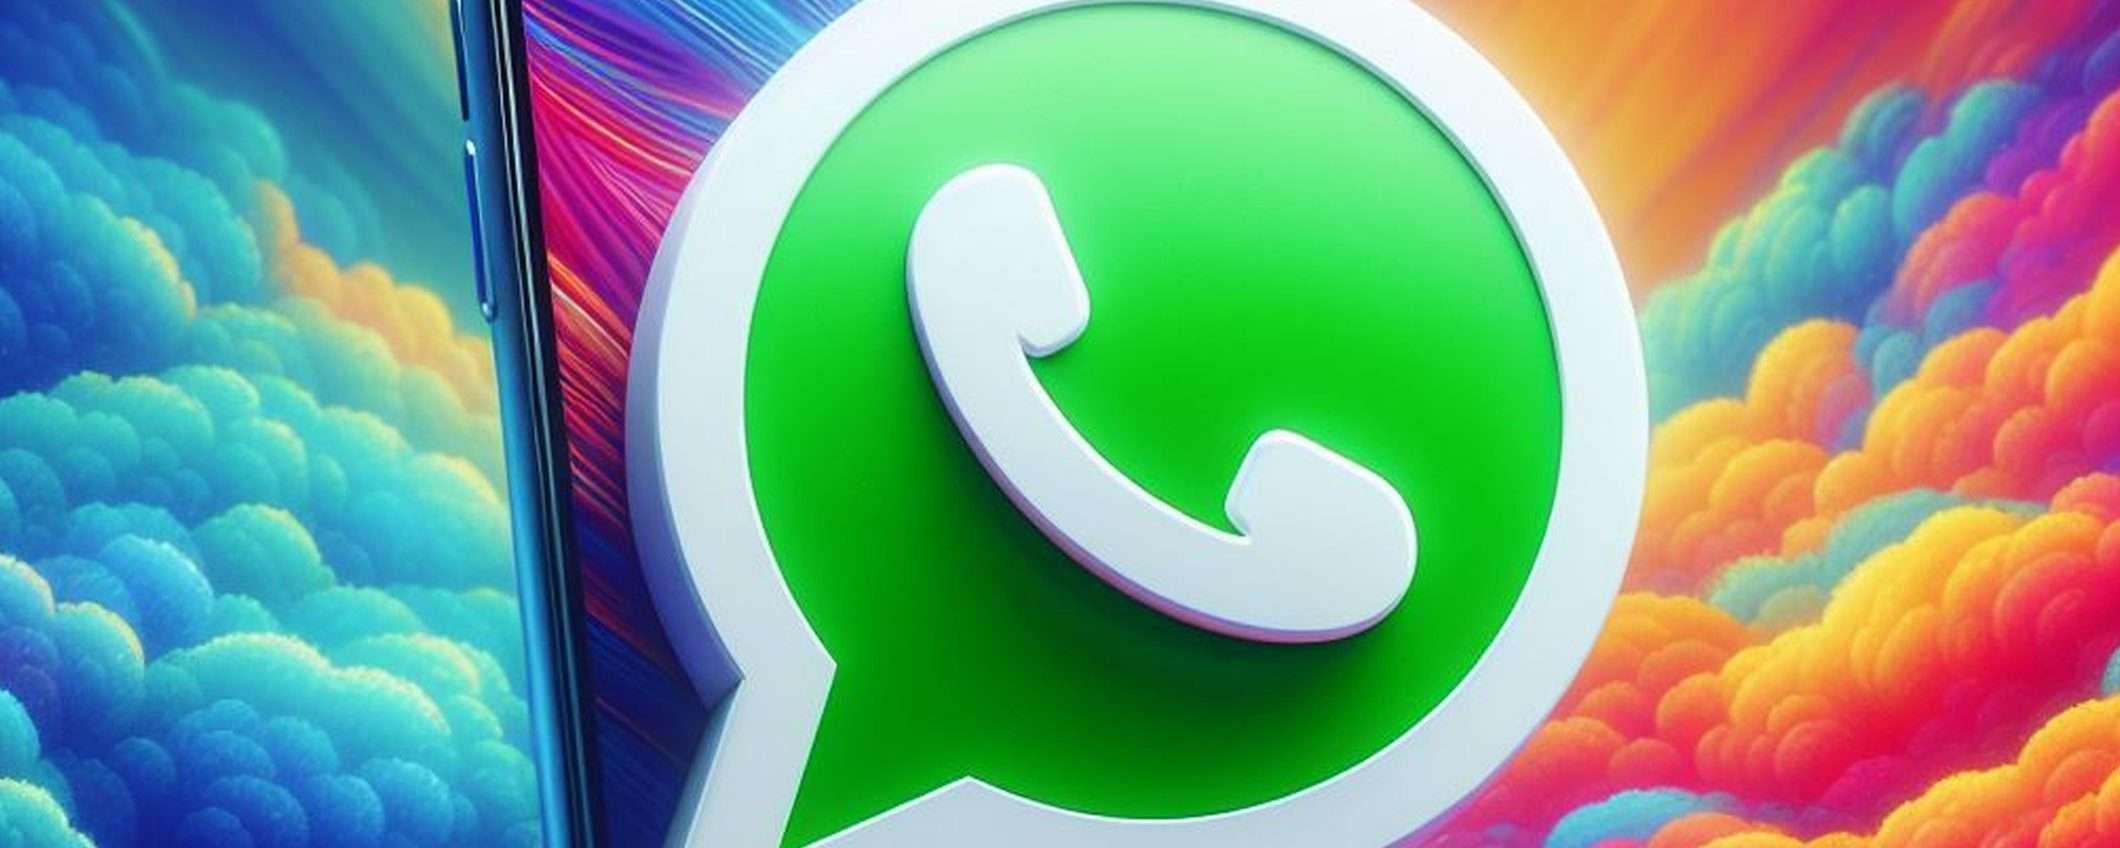 WhatsApp: funzionalità chat di terze parti (video)